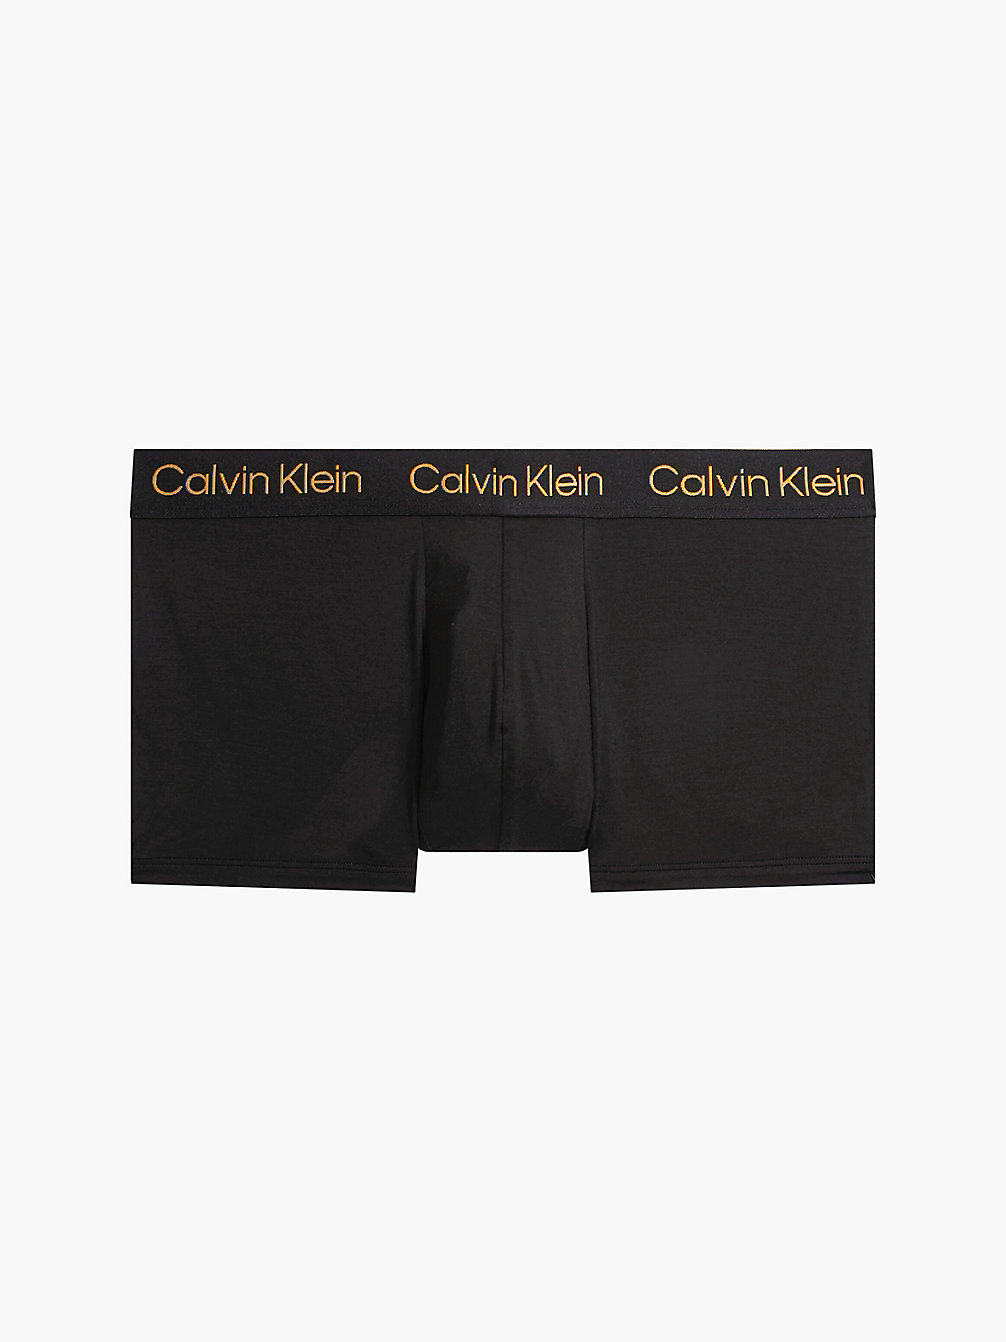 BLACK > Hüft-Shorts – CK Black Cashmere > undefined Herren - Calvin Klein